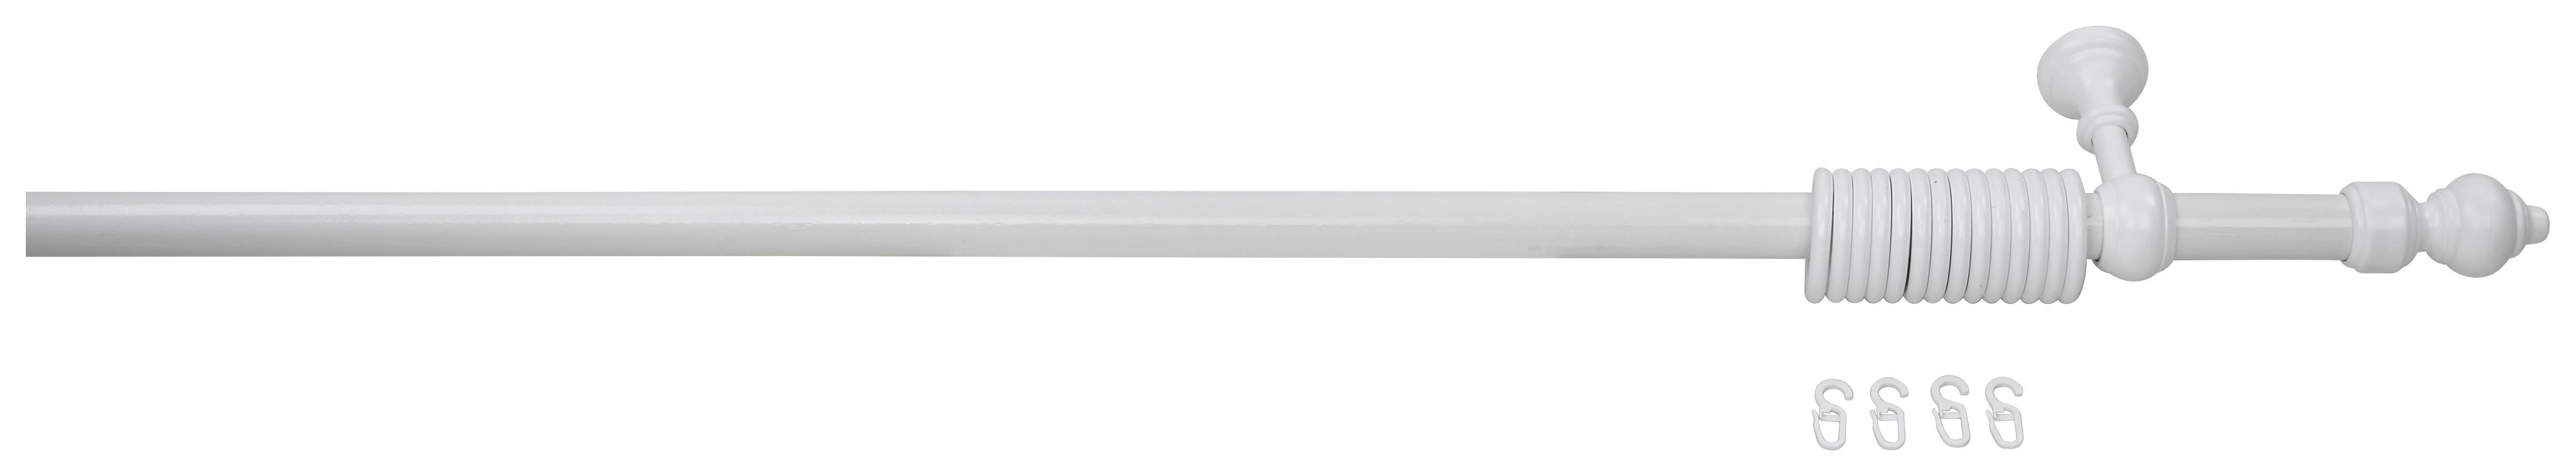 Rundstangengarnitur Benno Weiß L: 220 cm Kürzbar - Weiß, KONVENTIONELL, Kunststoff/Metall (220cm) - Ondega